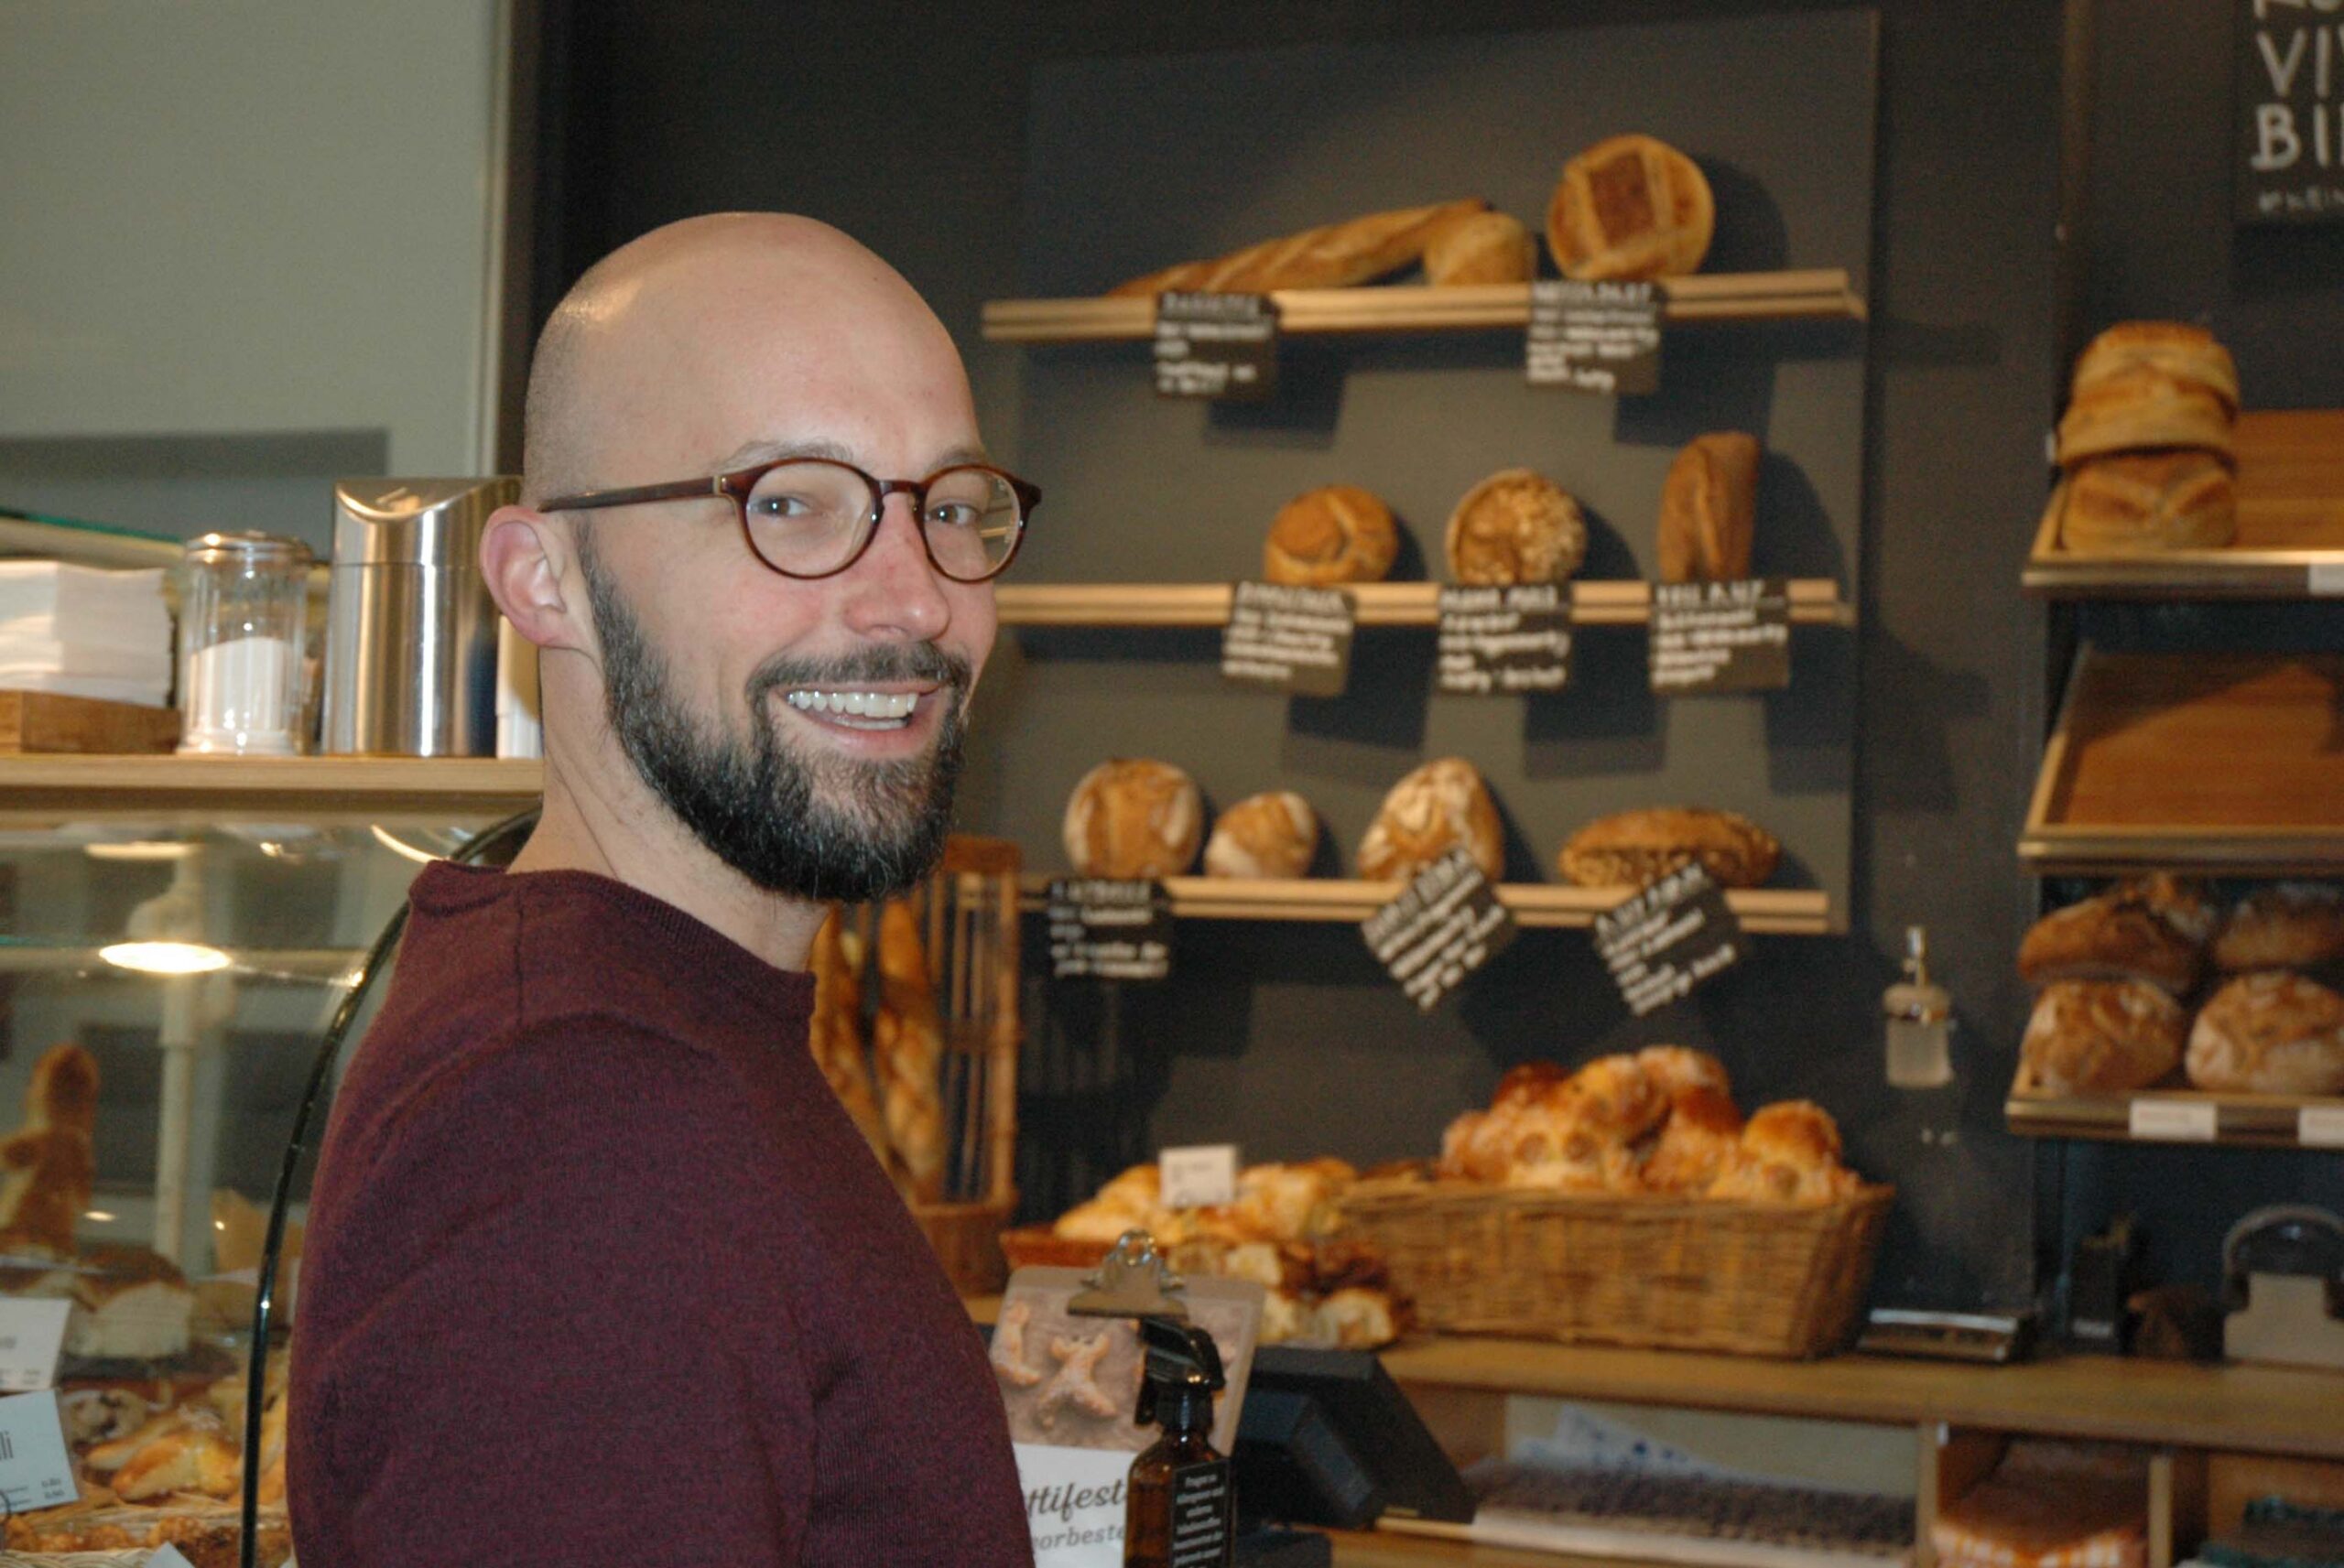 Ein volles Brotsortiment bis Ladenschluss führt zu Lebensmittelvernichtung, weiss Markus Hurschler, Geschäftsführer von Foodways.